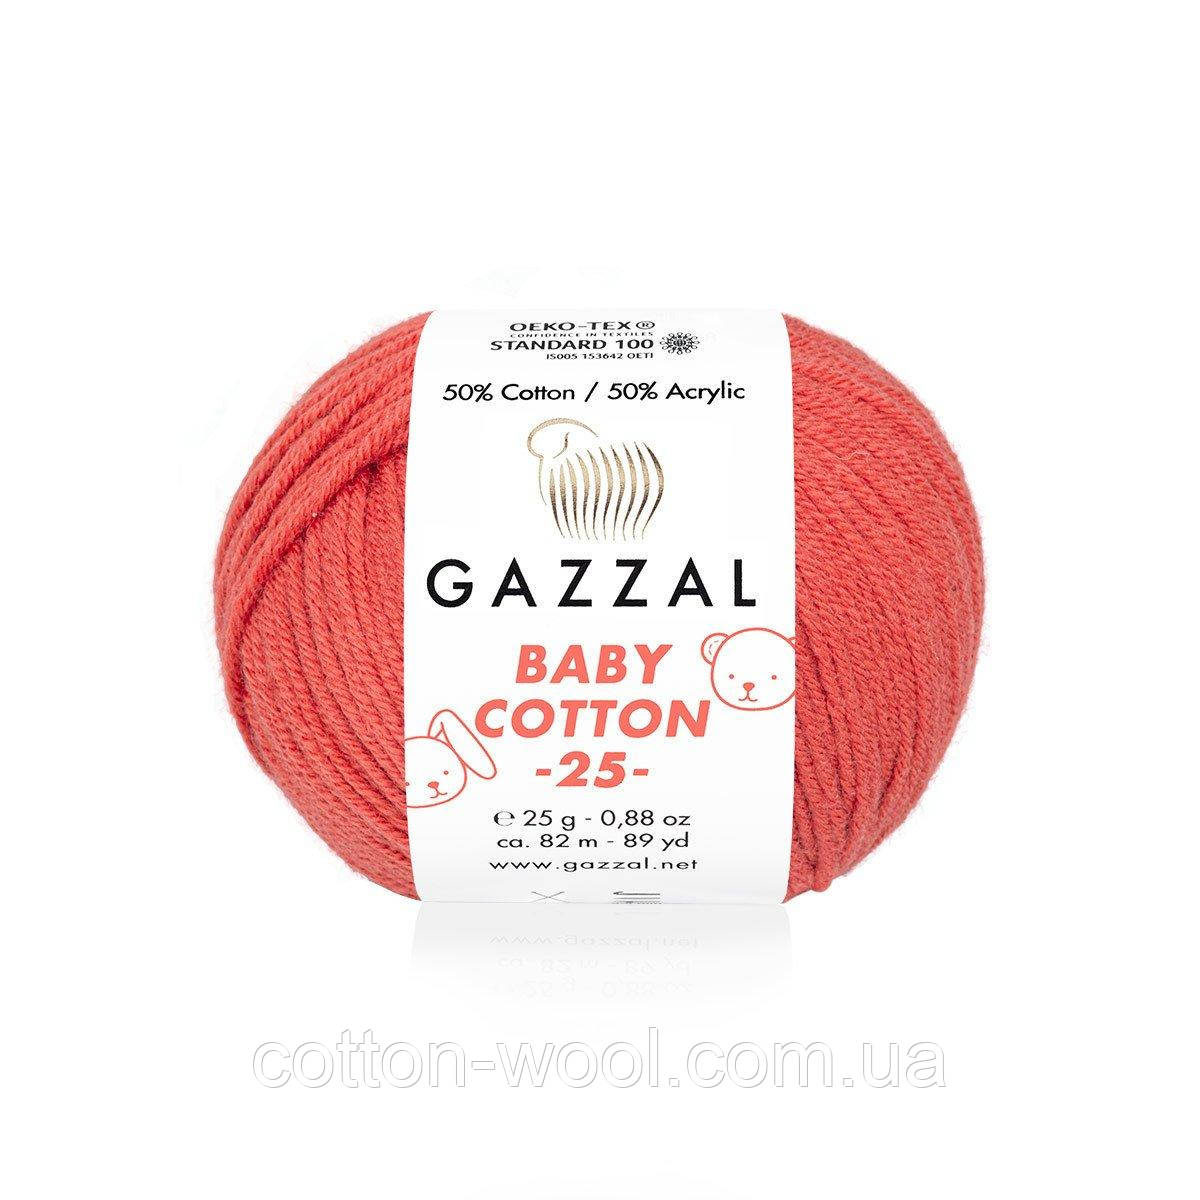 Gazzal Baby Cotton 25 (Бебі коттон 25) 3418